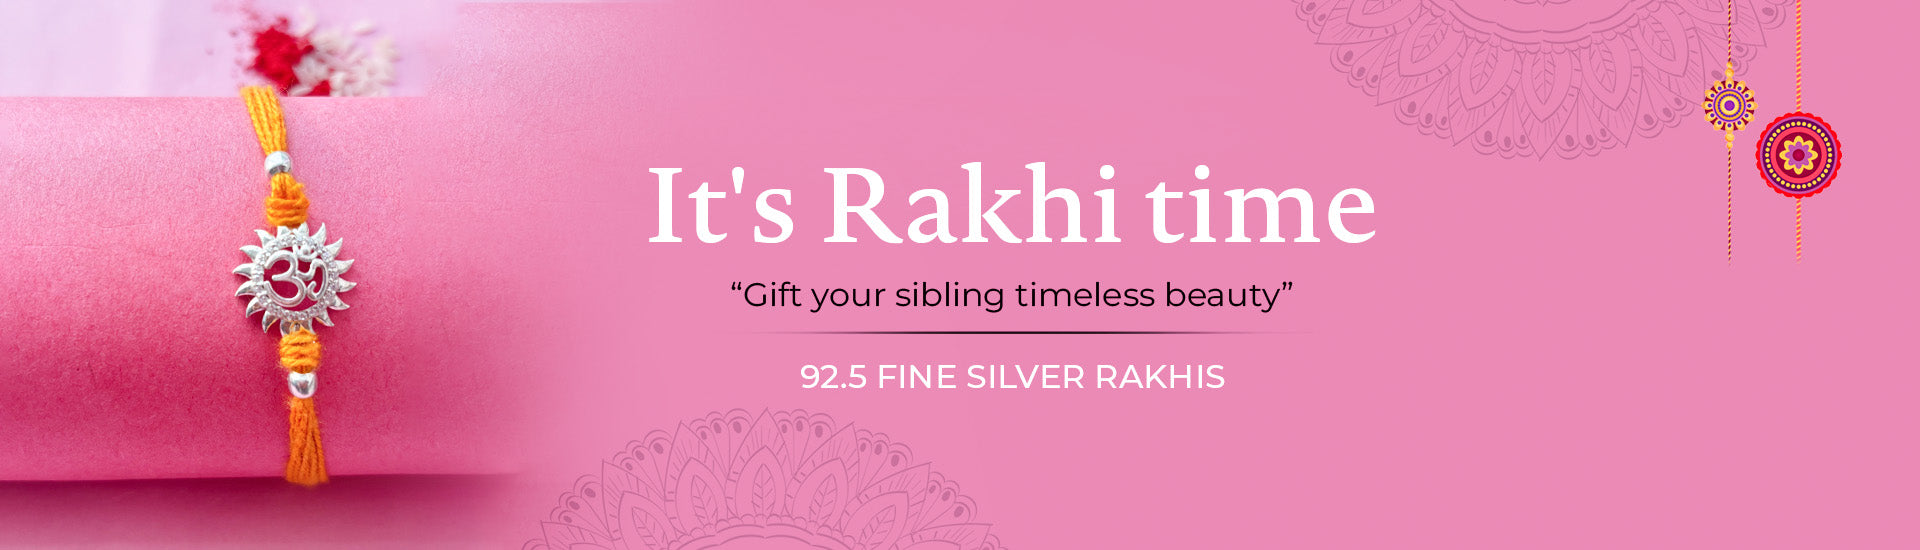 Rakhi Gifting